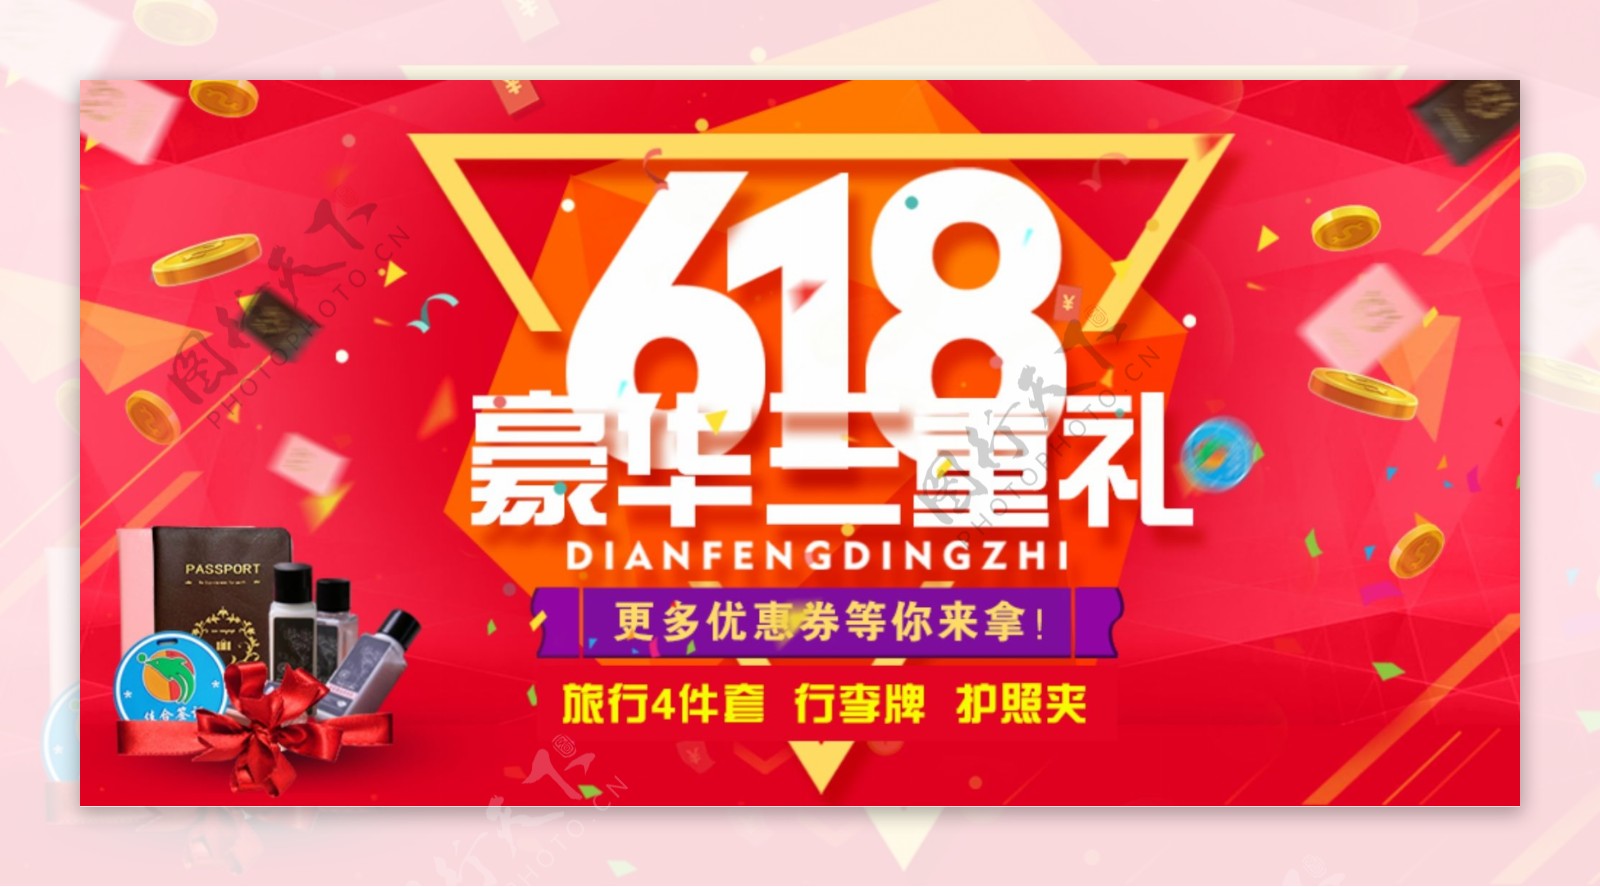 618父亲节促销淘宝电商banner